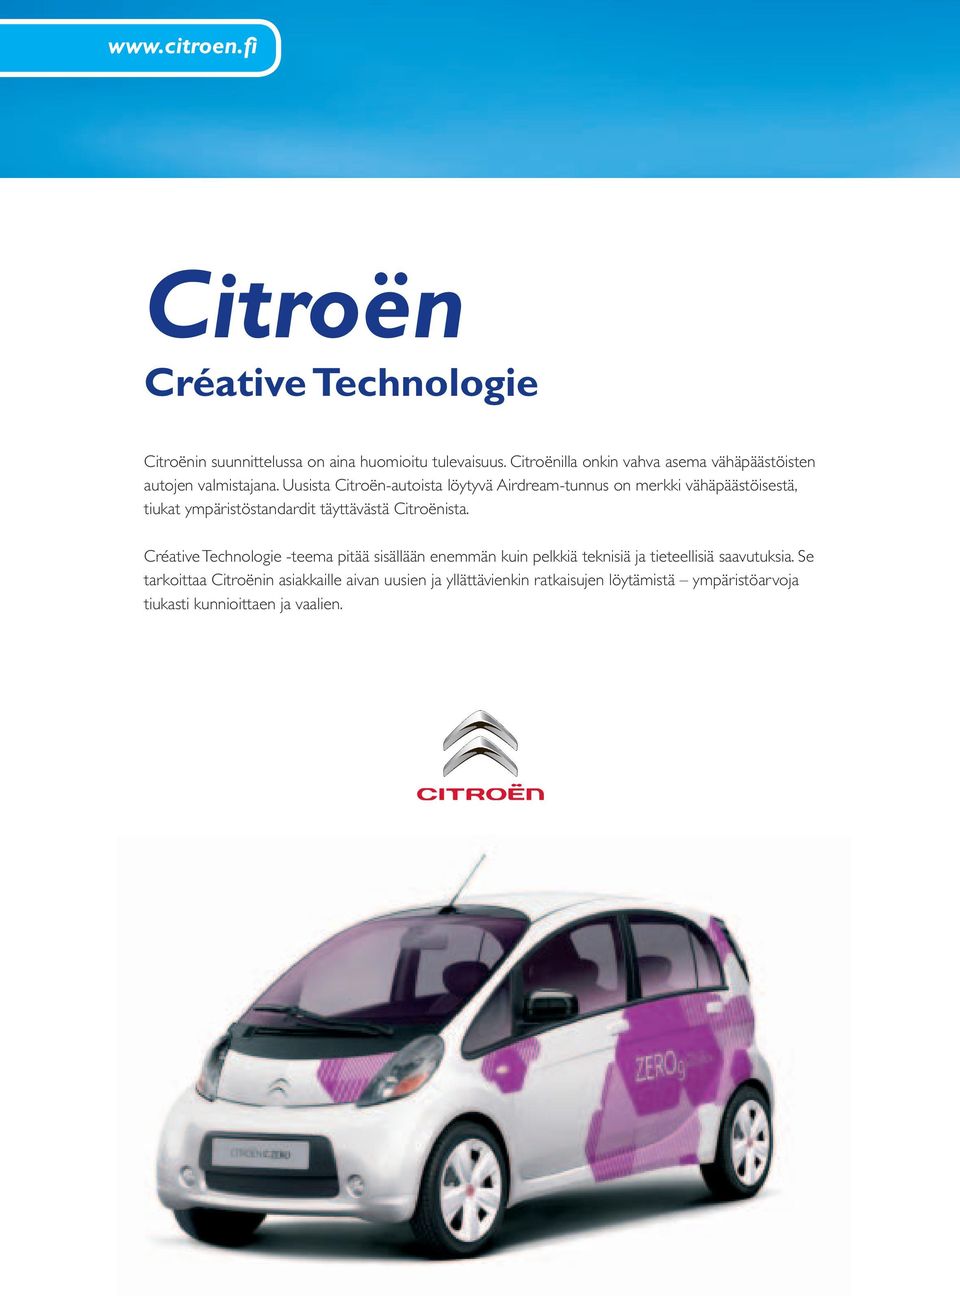 Uusista Citroën-autoista löytyvä Airdream-tunnus on merkki vähäpäästöisestä, tiukat ympäristöstandardit täyttävästä Citroënista.